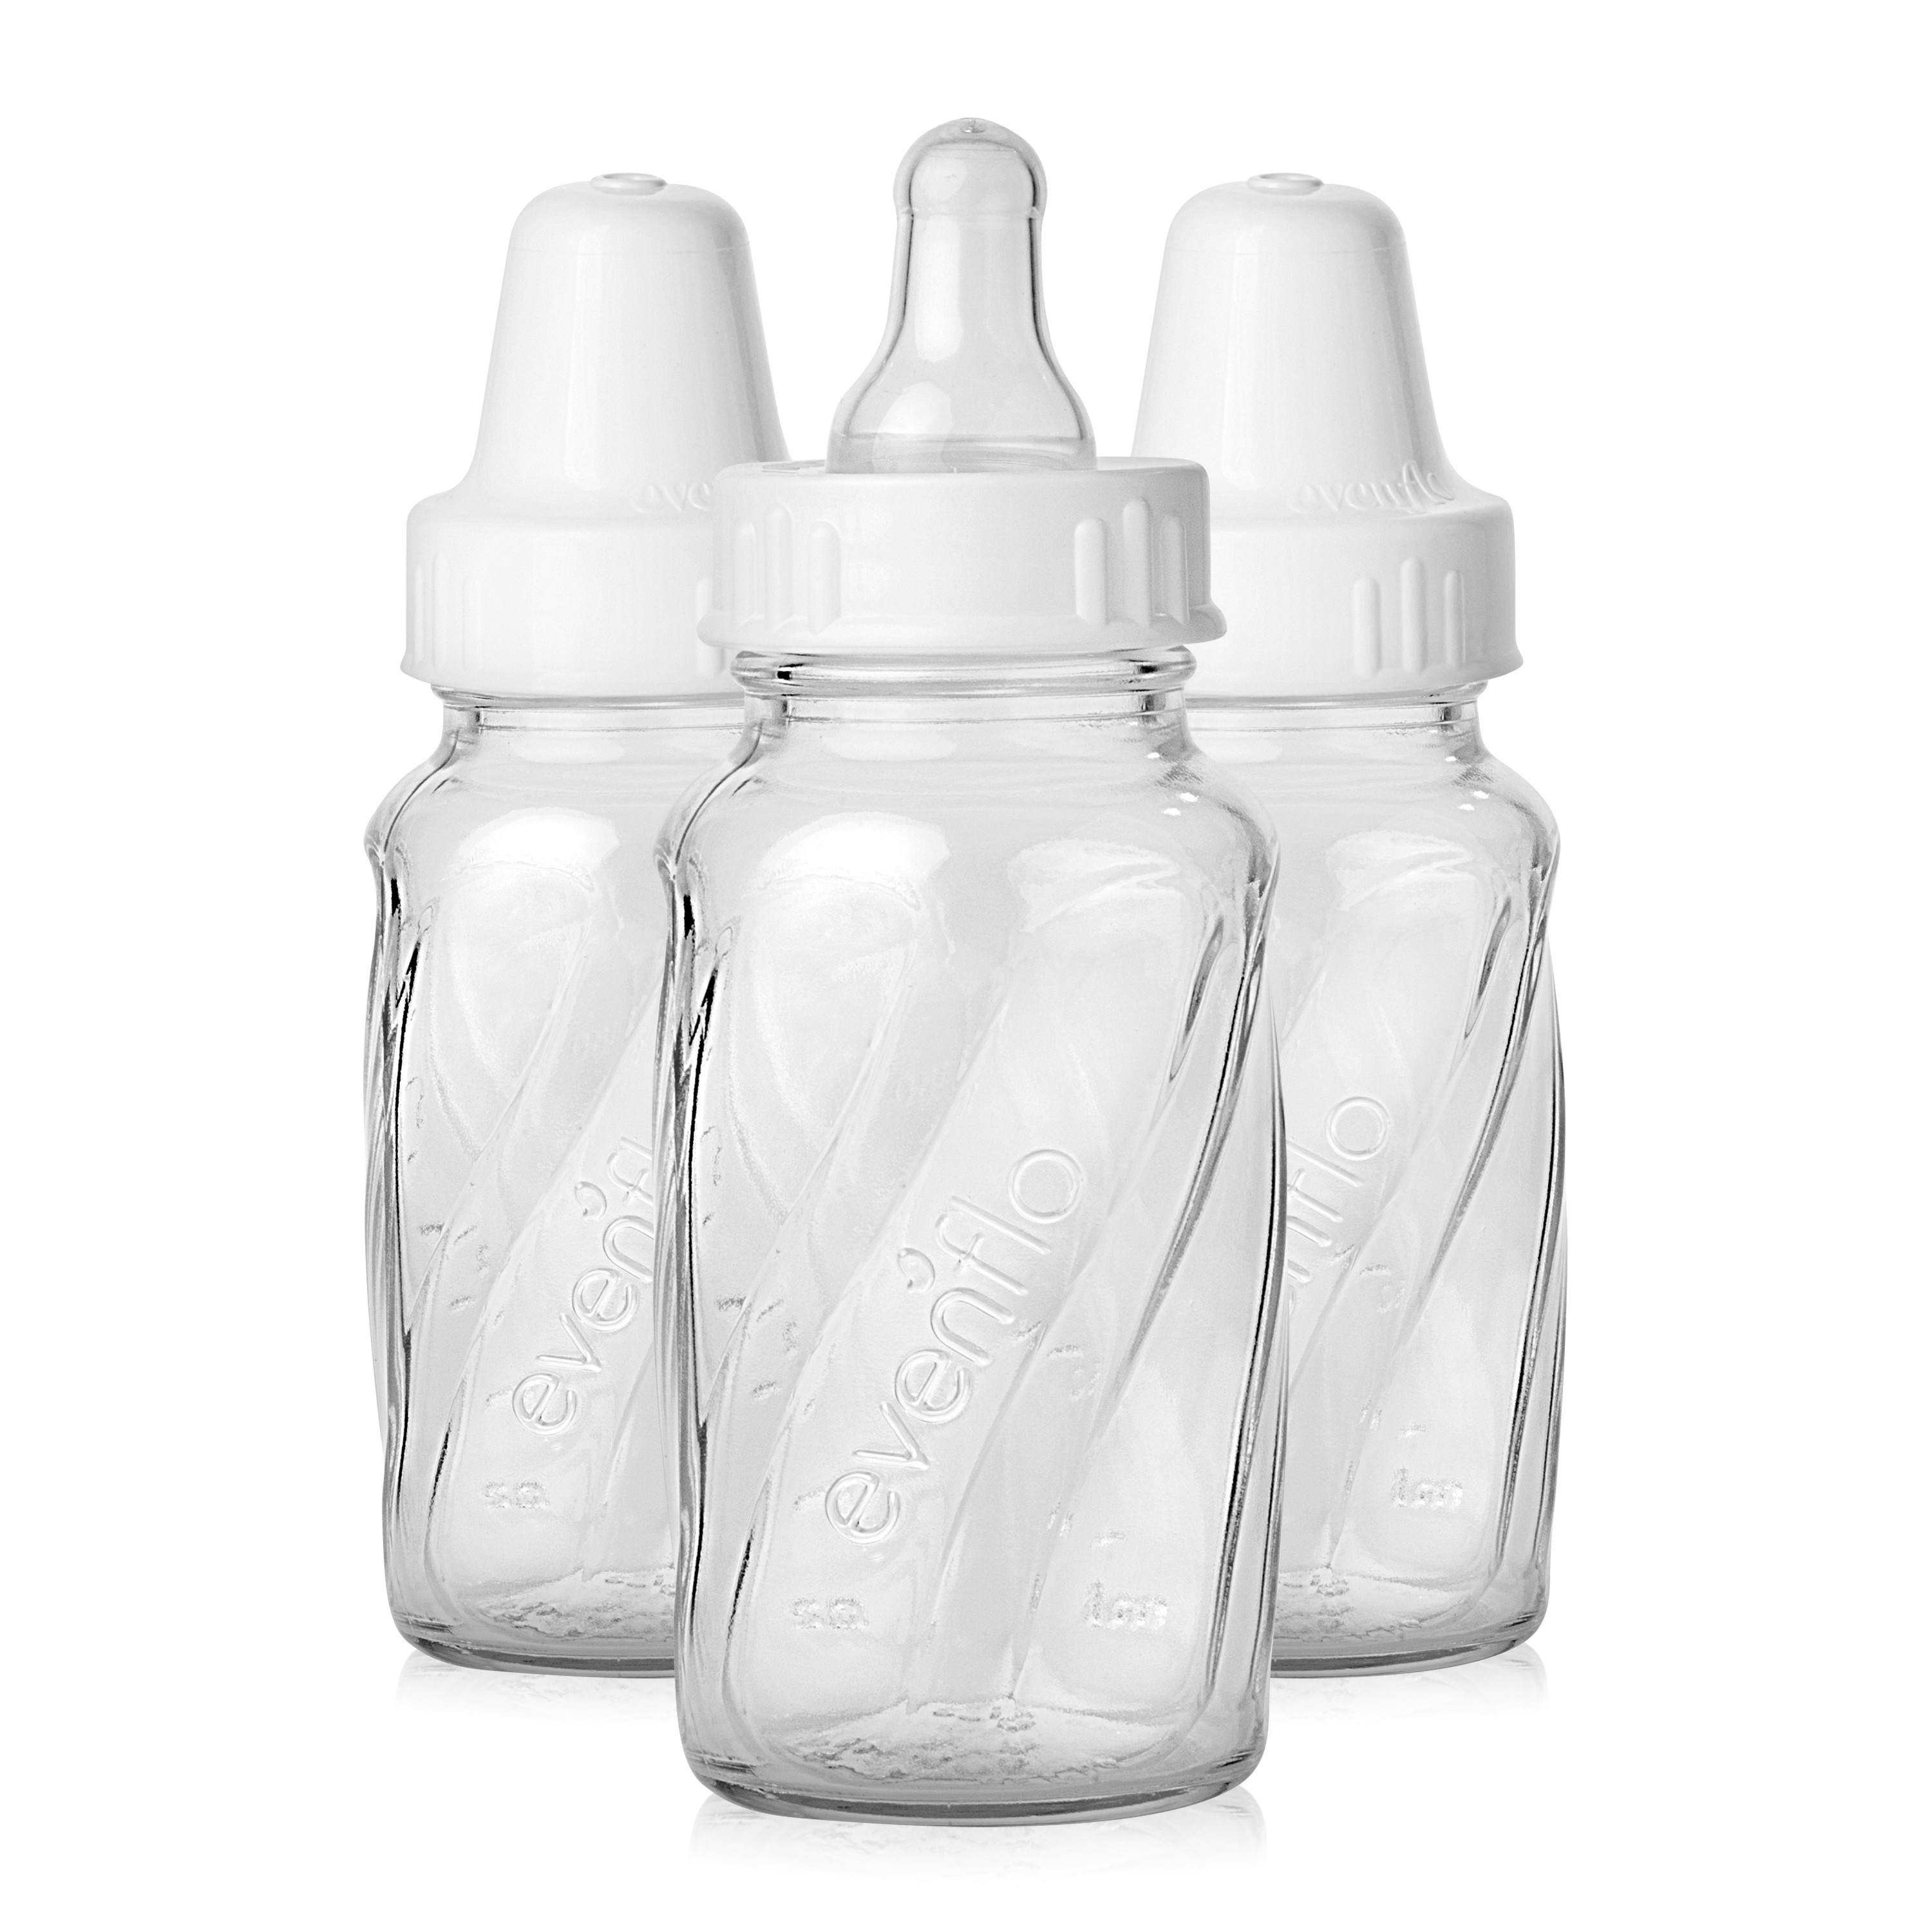 Evenflo 3-Pack Customflow Glass Bottles (4 oz.) - ivory, one size - image 1 of 5